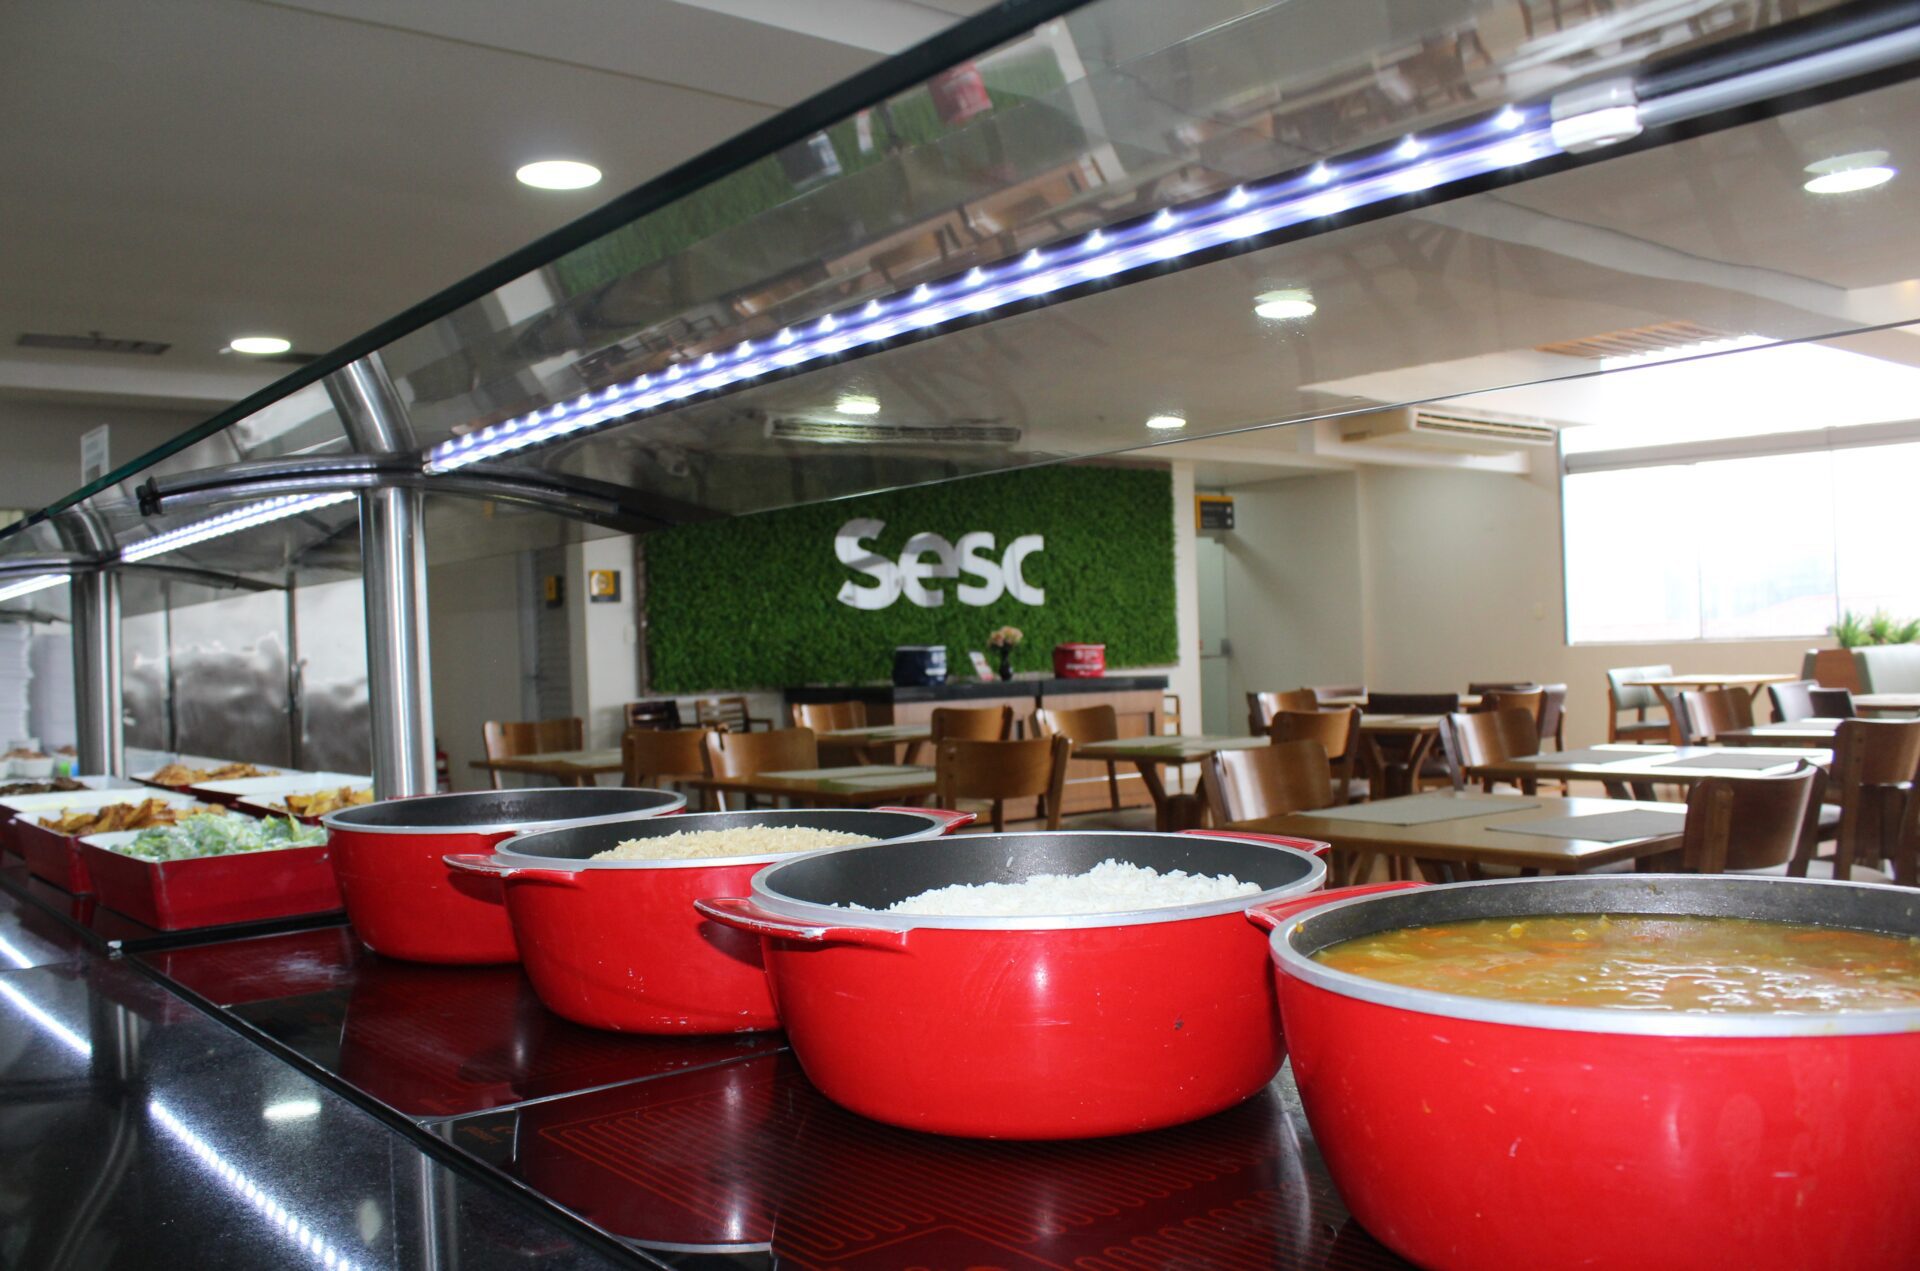 Remodelado, Restaurante do Sesc Gravataí aposta em festivais gastronômicos e práticas sustentáveis